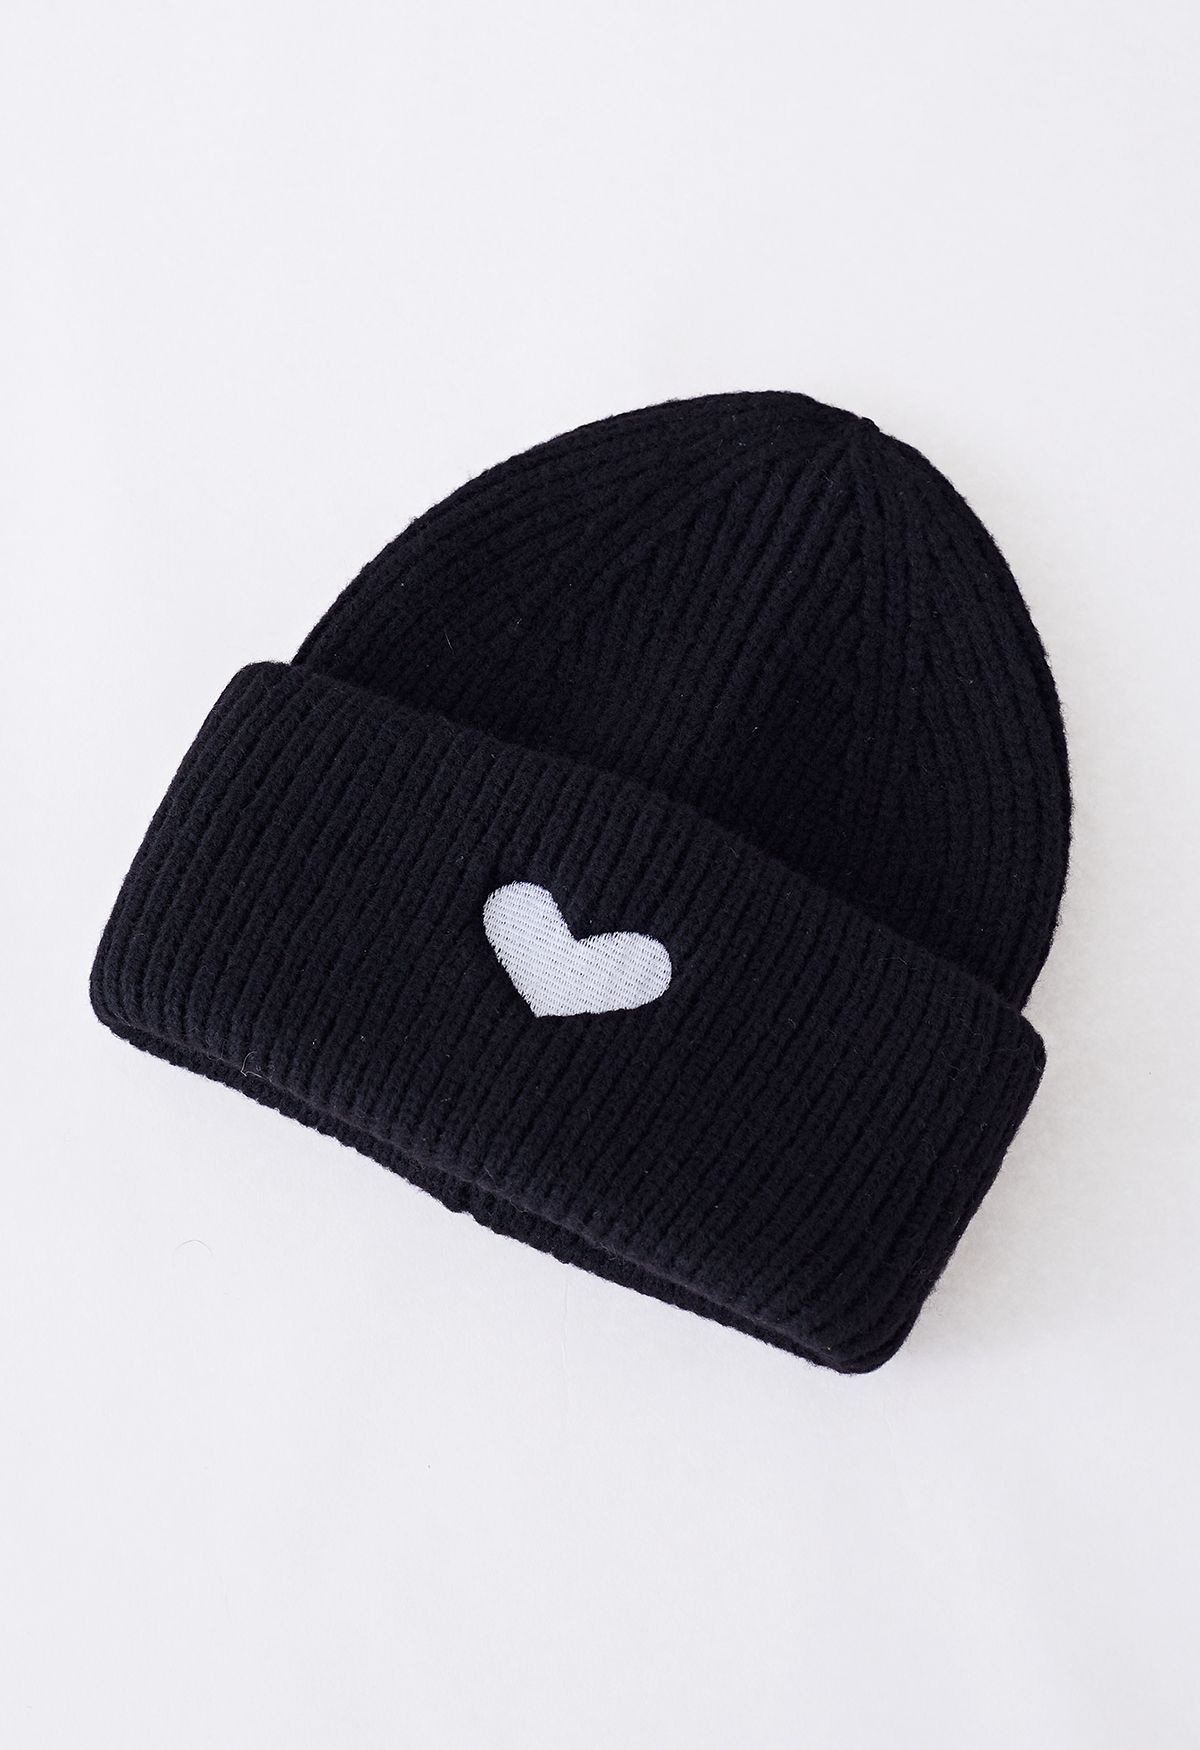 Heart Patch Folded Beanie Hat in Black